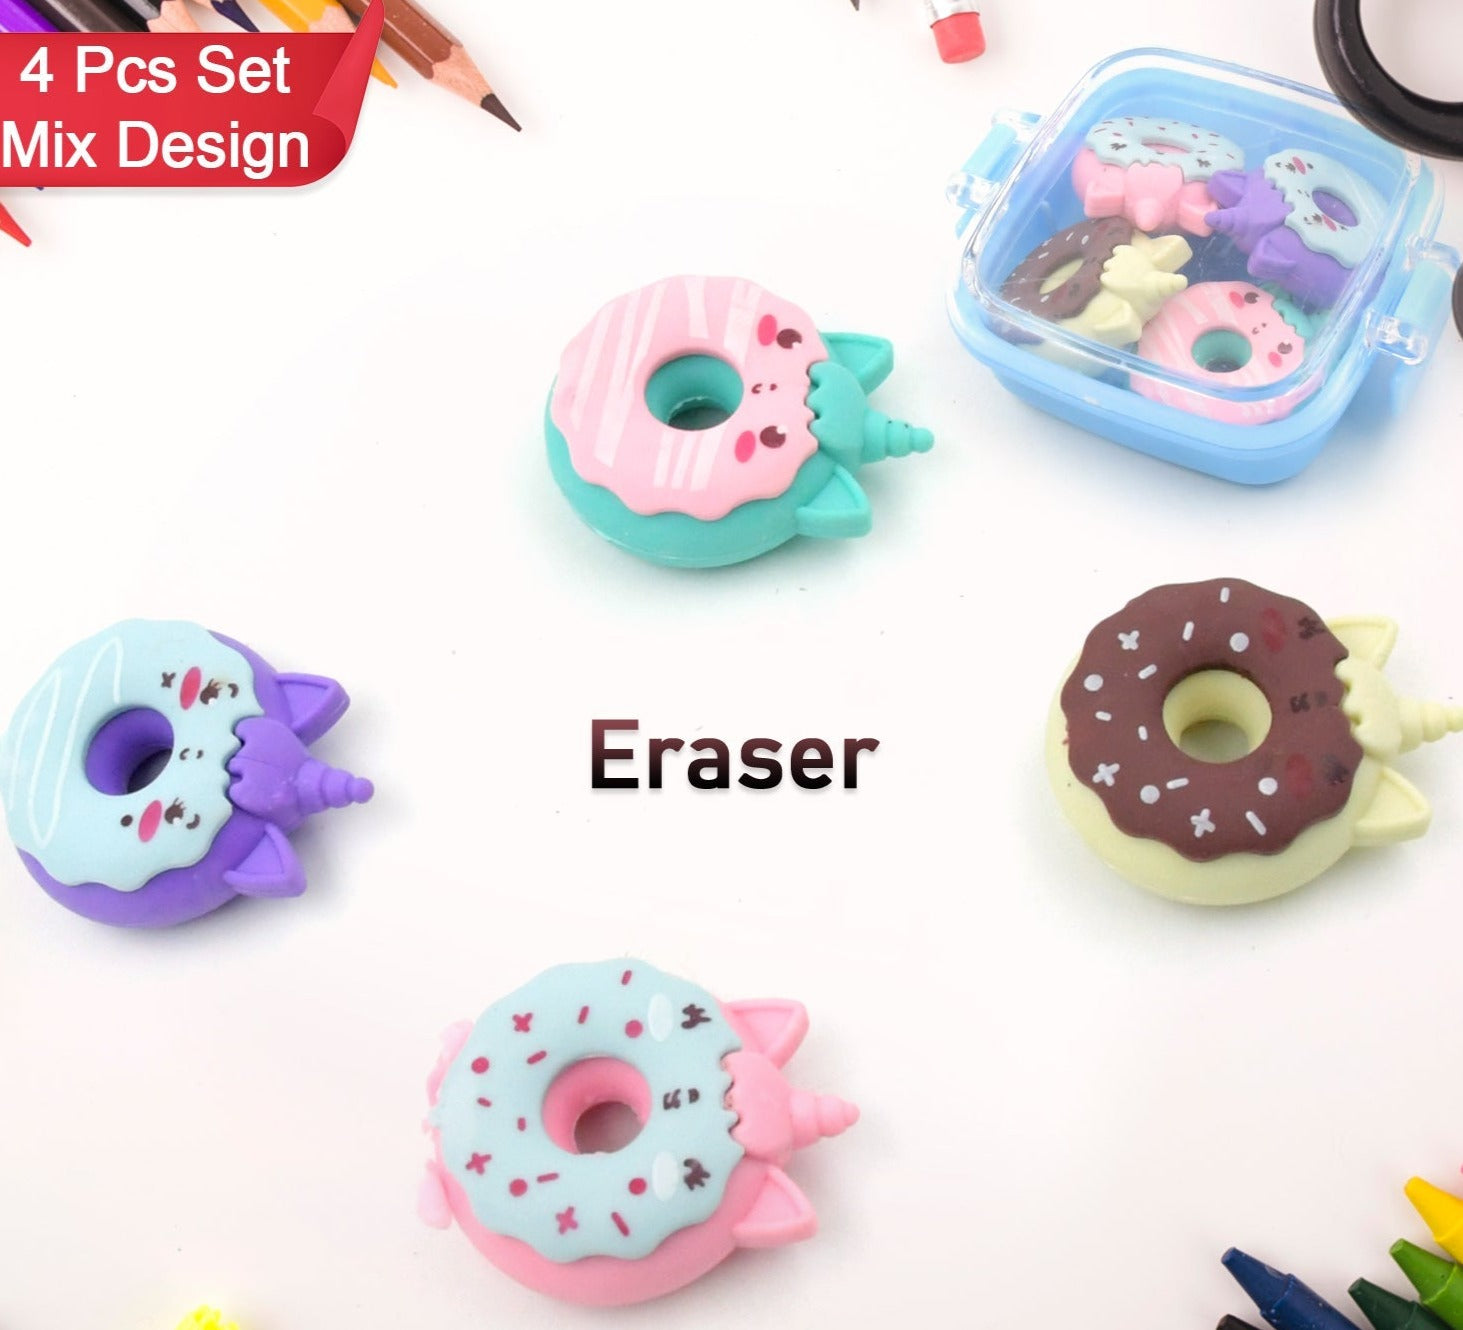 3D Fancy Colorful Erasers With Plastic Case (Mix Design 4 pc Set)